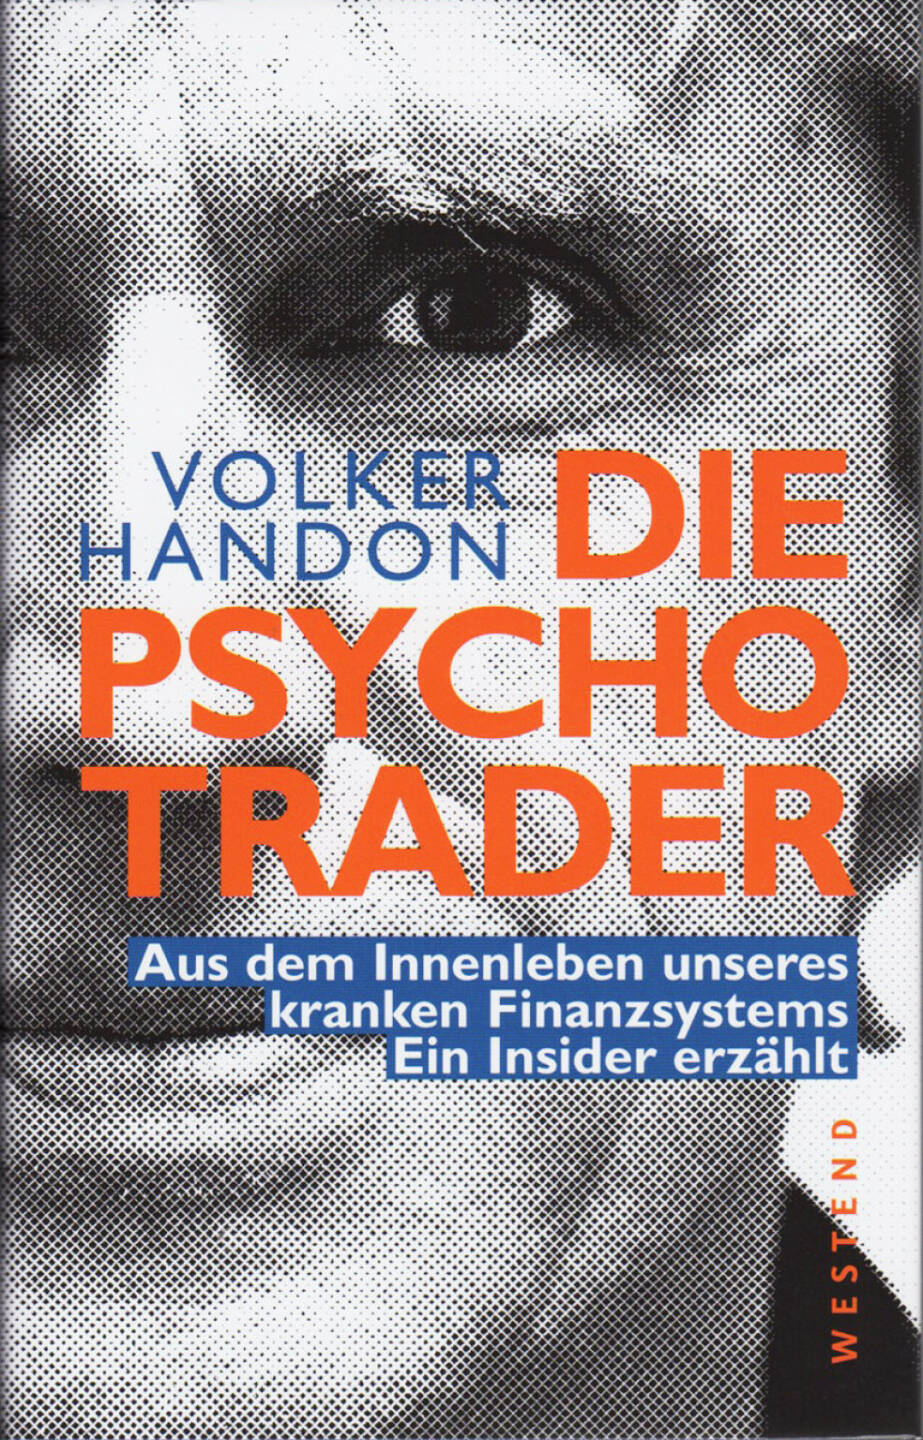 Volker Handon - Die Psycho-Trader - http://boerse-social.com/financebooks/show/volker_handon_-_die_psycho-trader_aus_dem_innenleben_unseres_kranken_finanzsystems_ein_insider_erzahlt